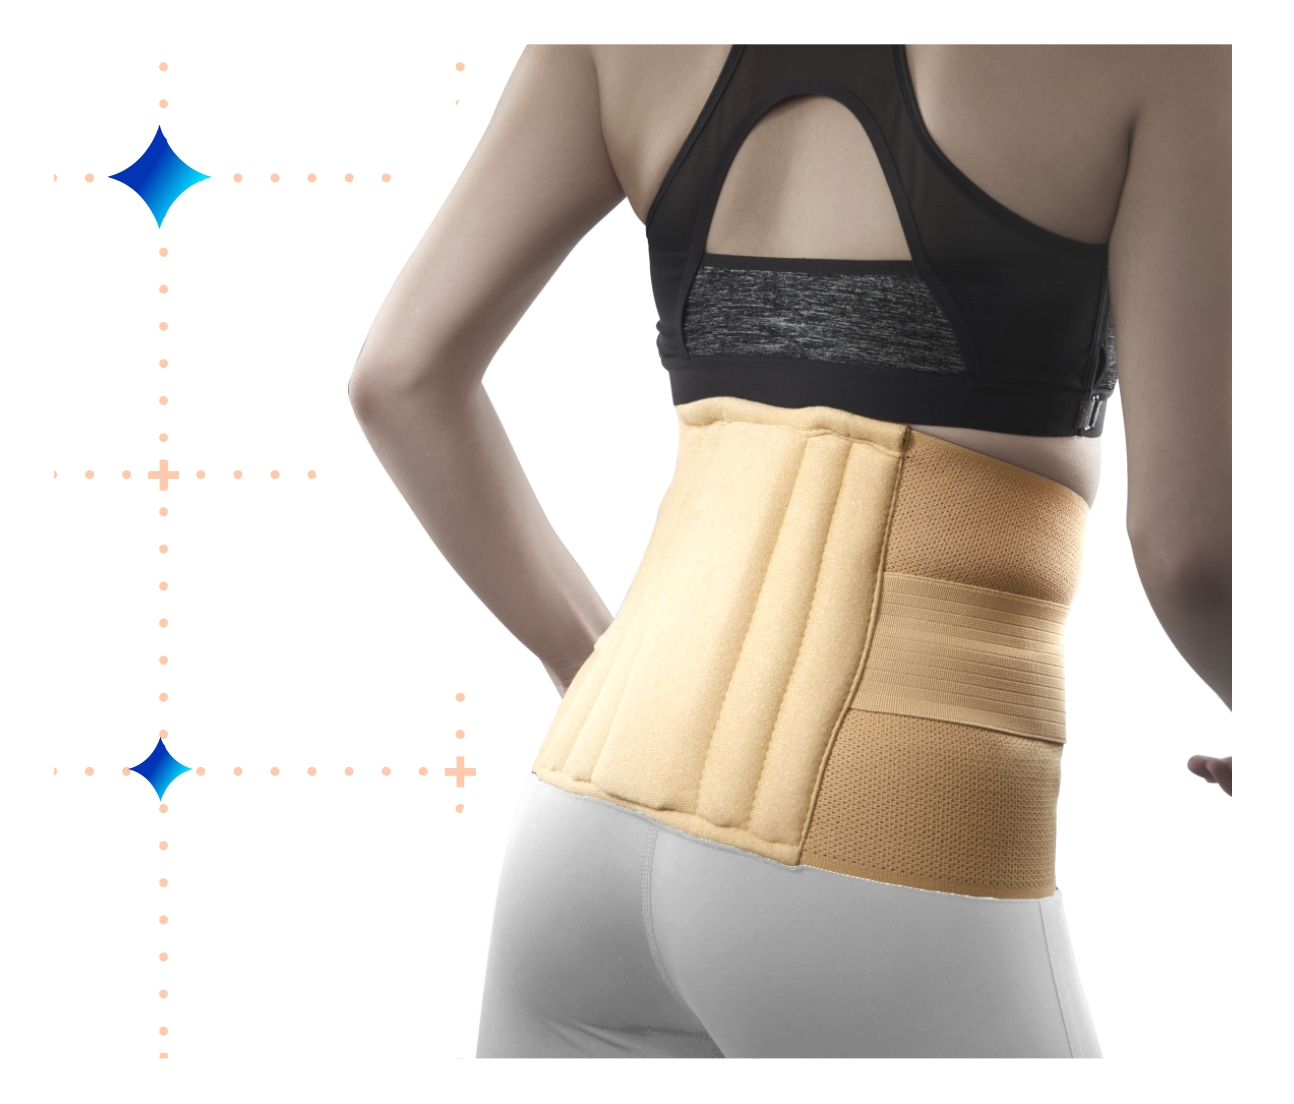 Summark Lumbar Waist Support Belt Strong Lower Back Brace Support Corset  Waist Trainer Sweat Slim Belt For Sports Pain Relief 